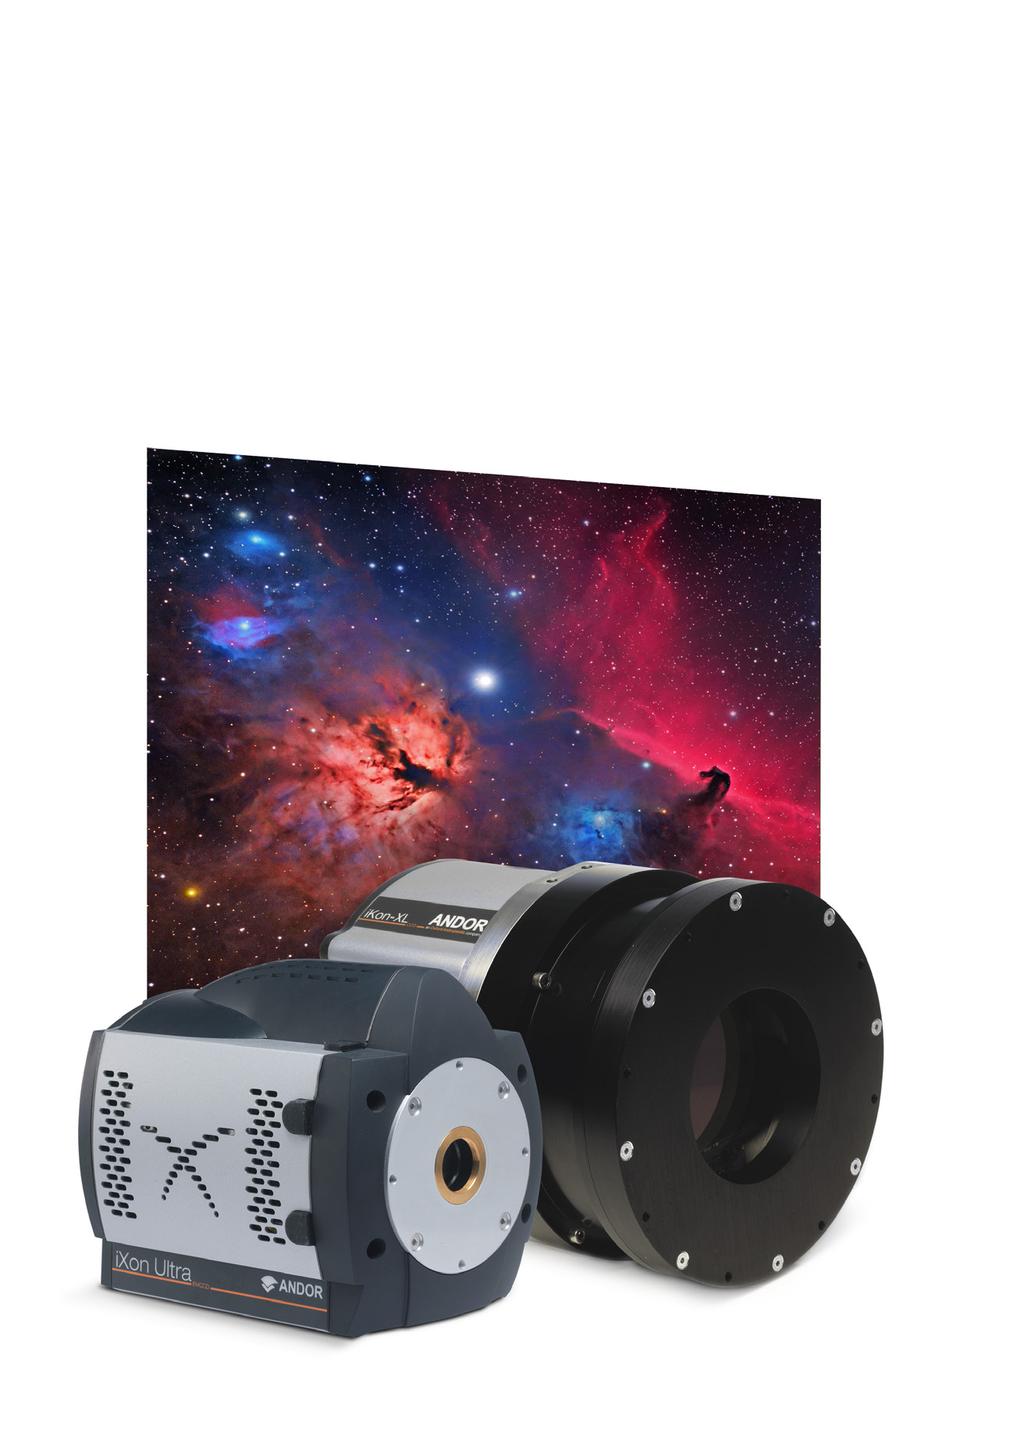 Cameras for Astronomy High